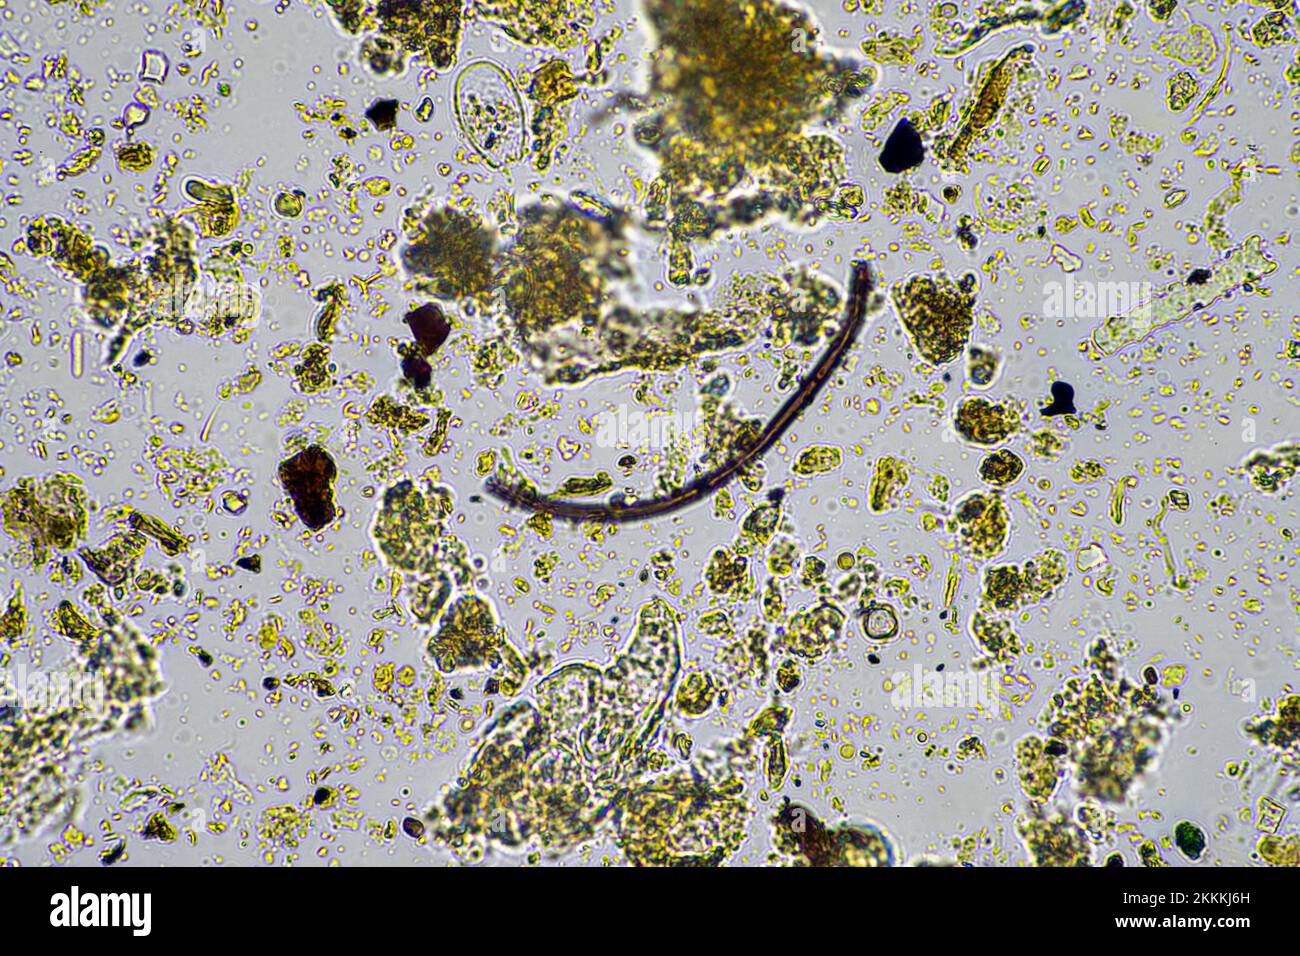 hongos y microorganismos del suelo en una muestra de suelo y abono en primavera Foto de stock